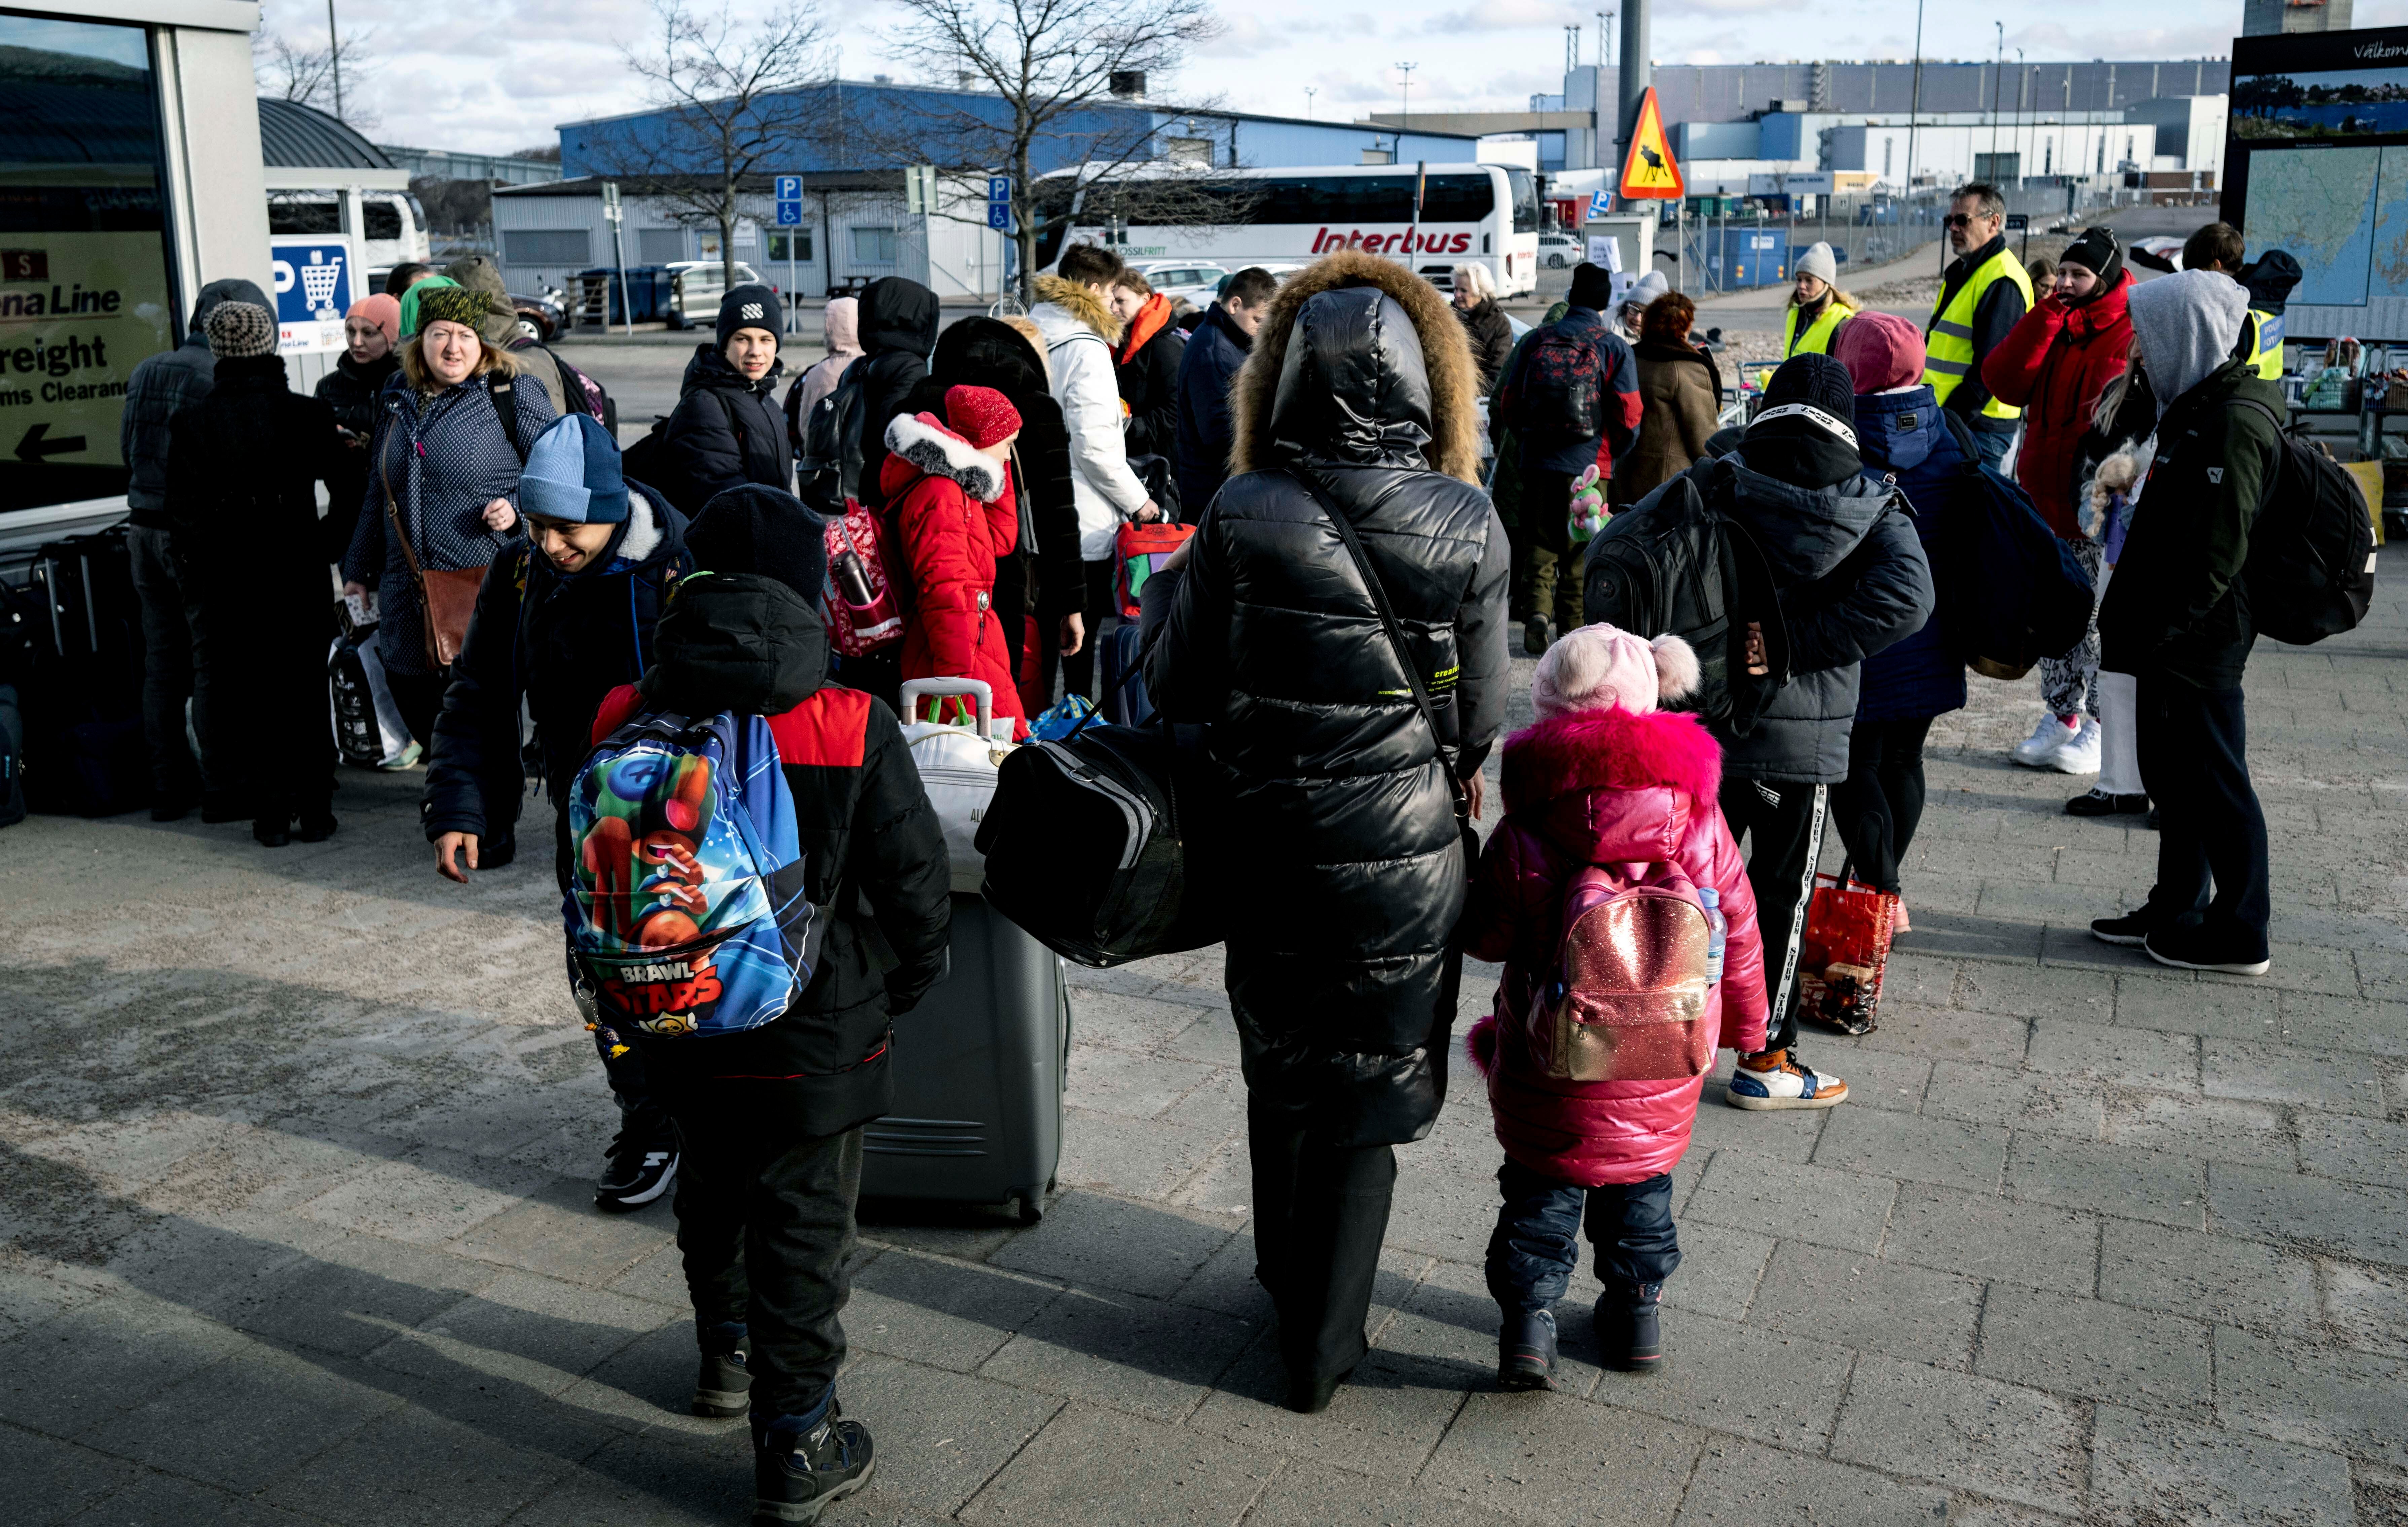 Refugees from Ukraine arrive in Poland (Johan Nilsson/TT News Agency via AP)